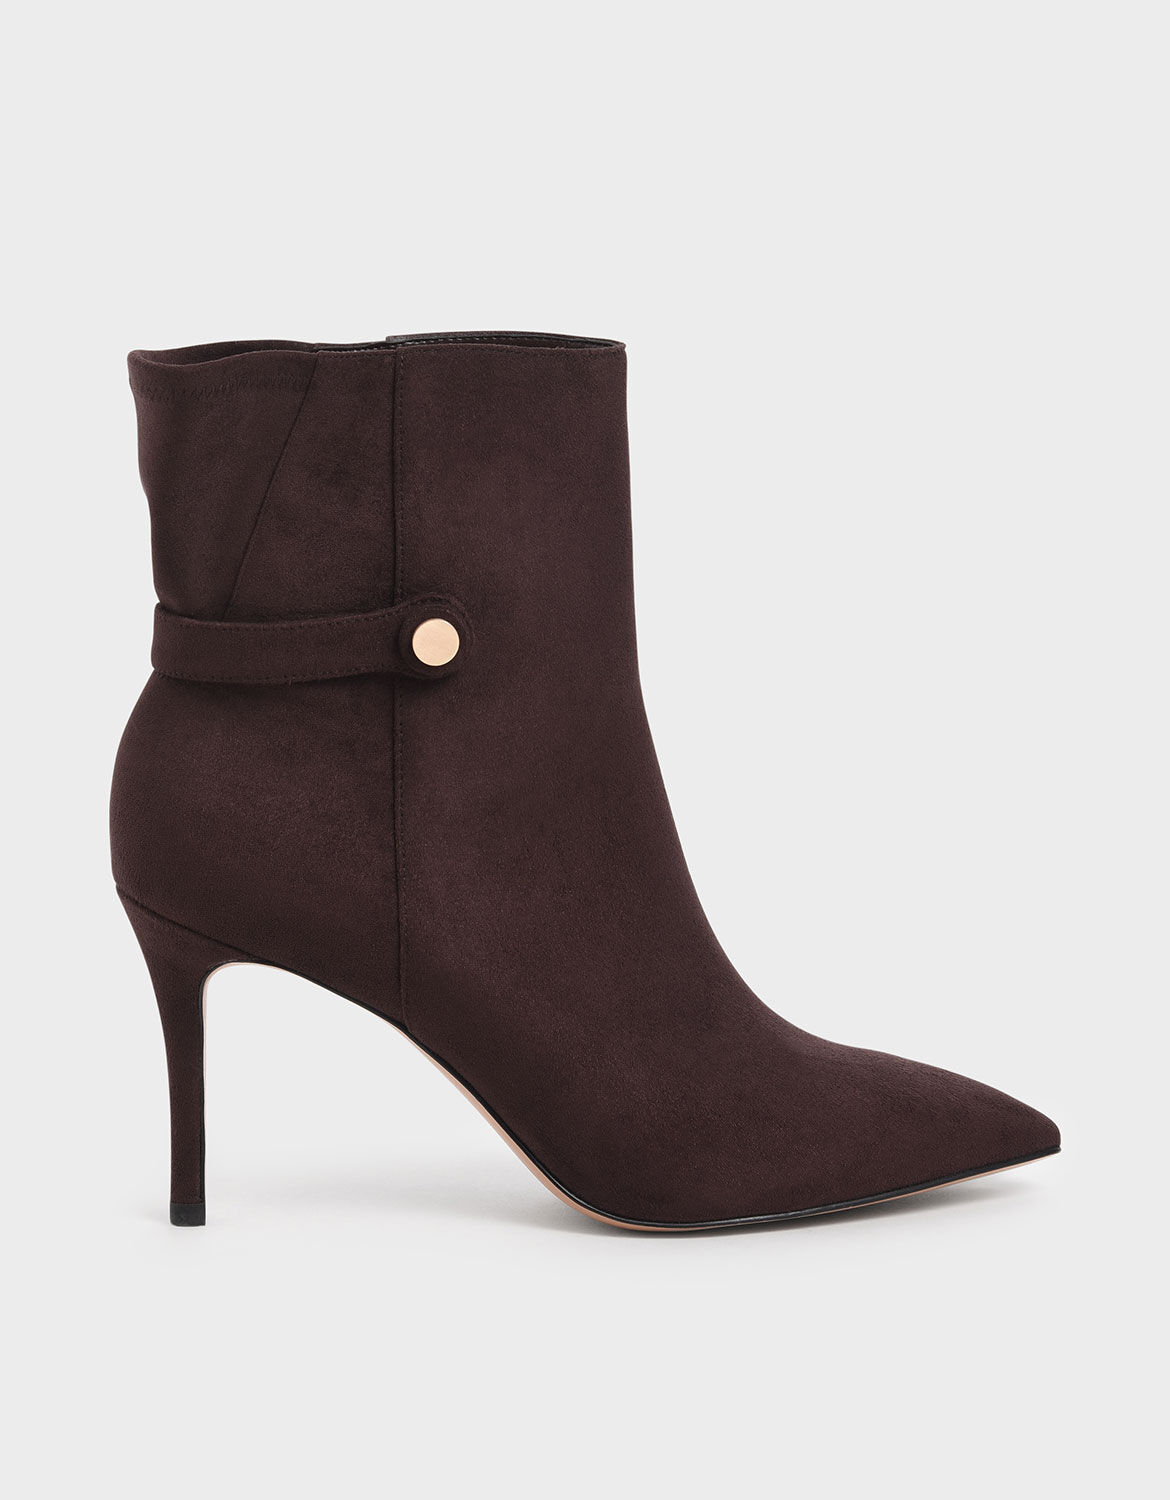 burgundy stiletto boots